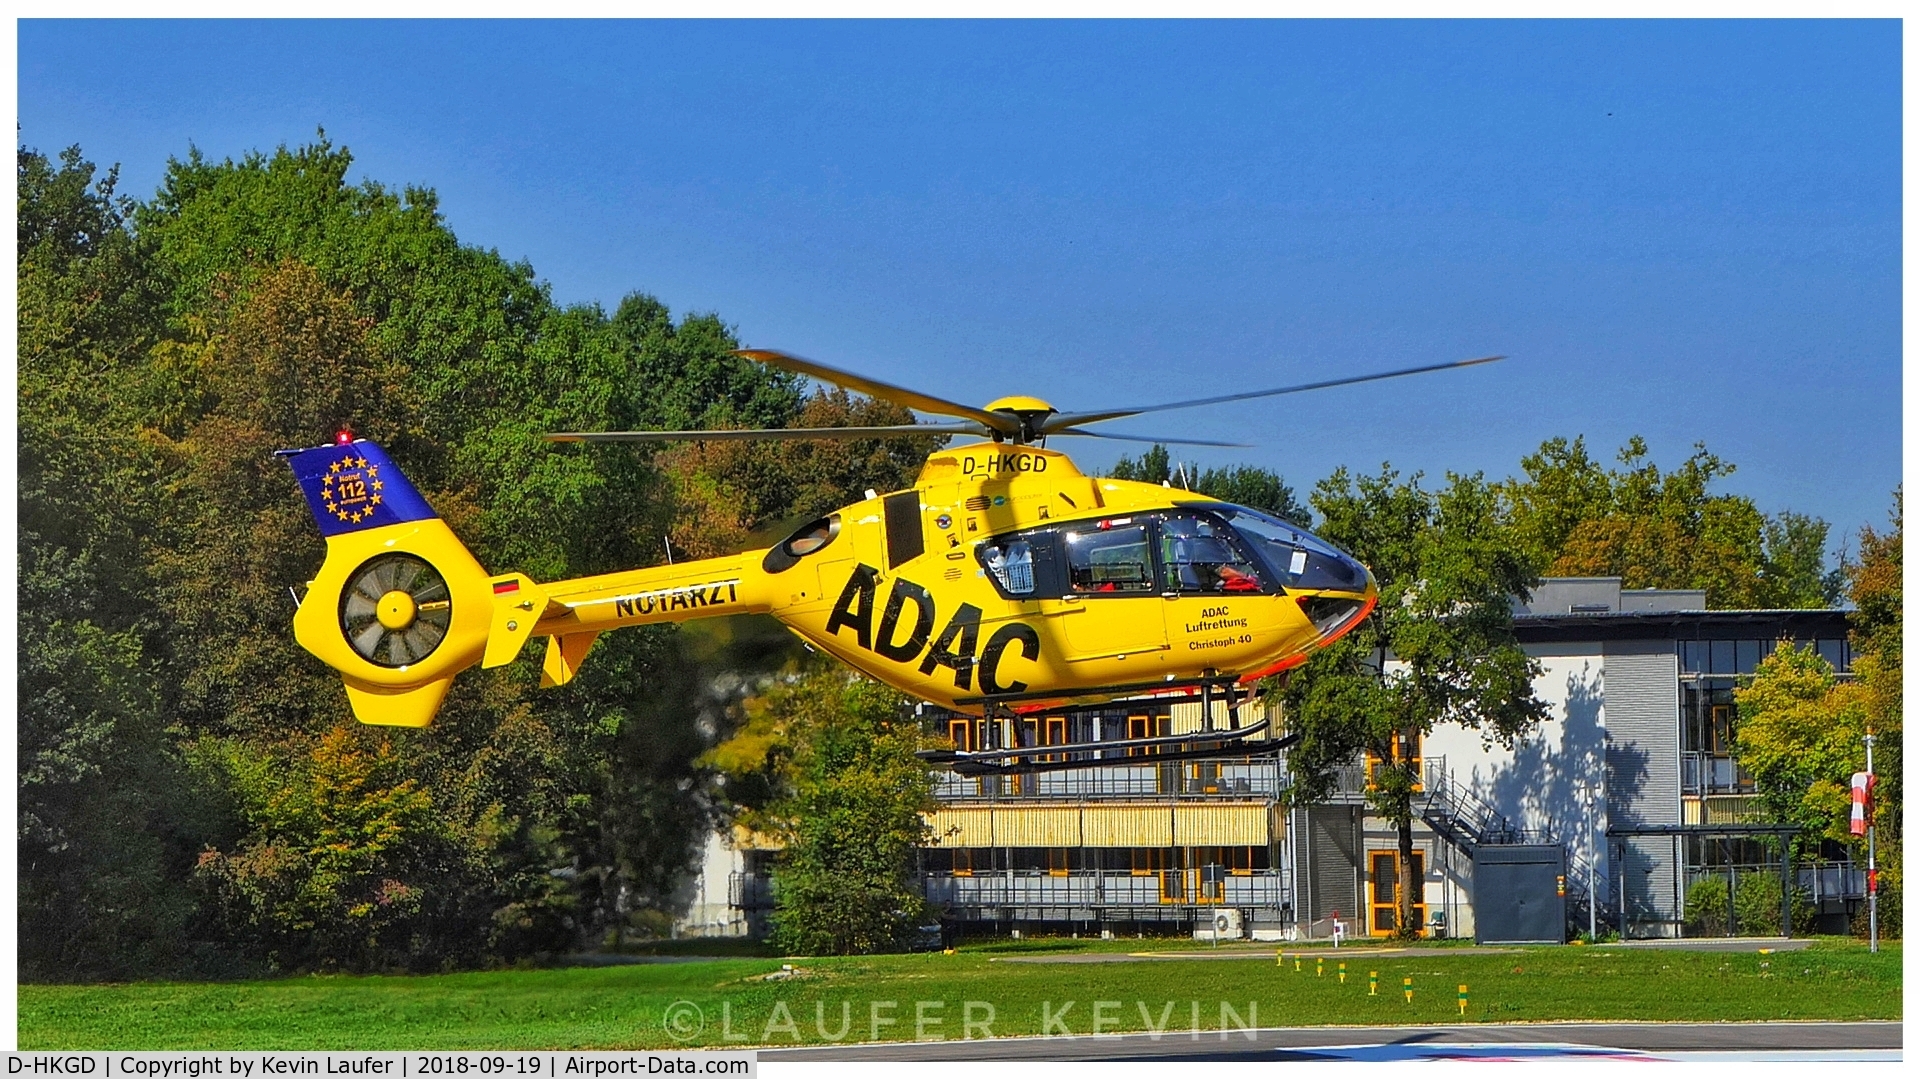 D-HKGD, 2012 Eurocopter EC-135P-2+ C/N 1036, Christoph 40 at krankenhaus Günzburg